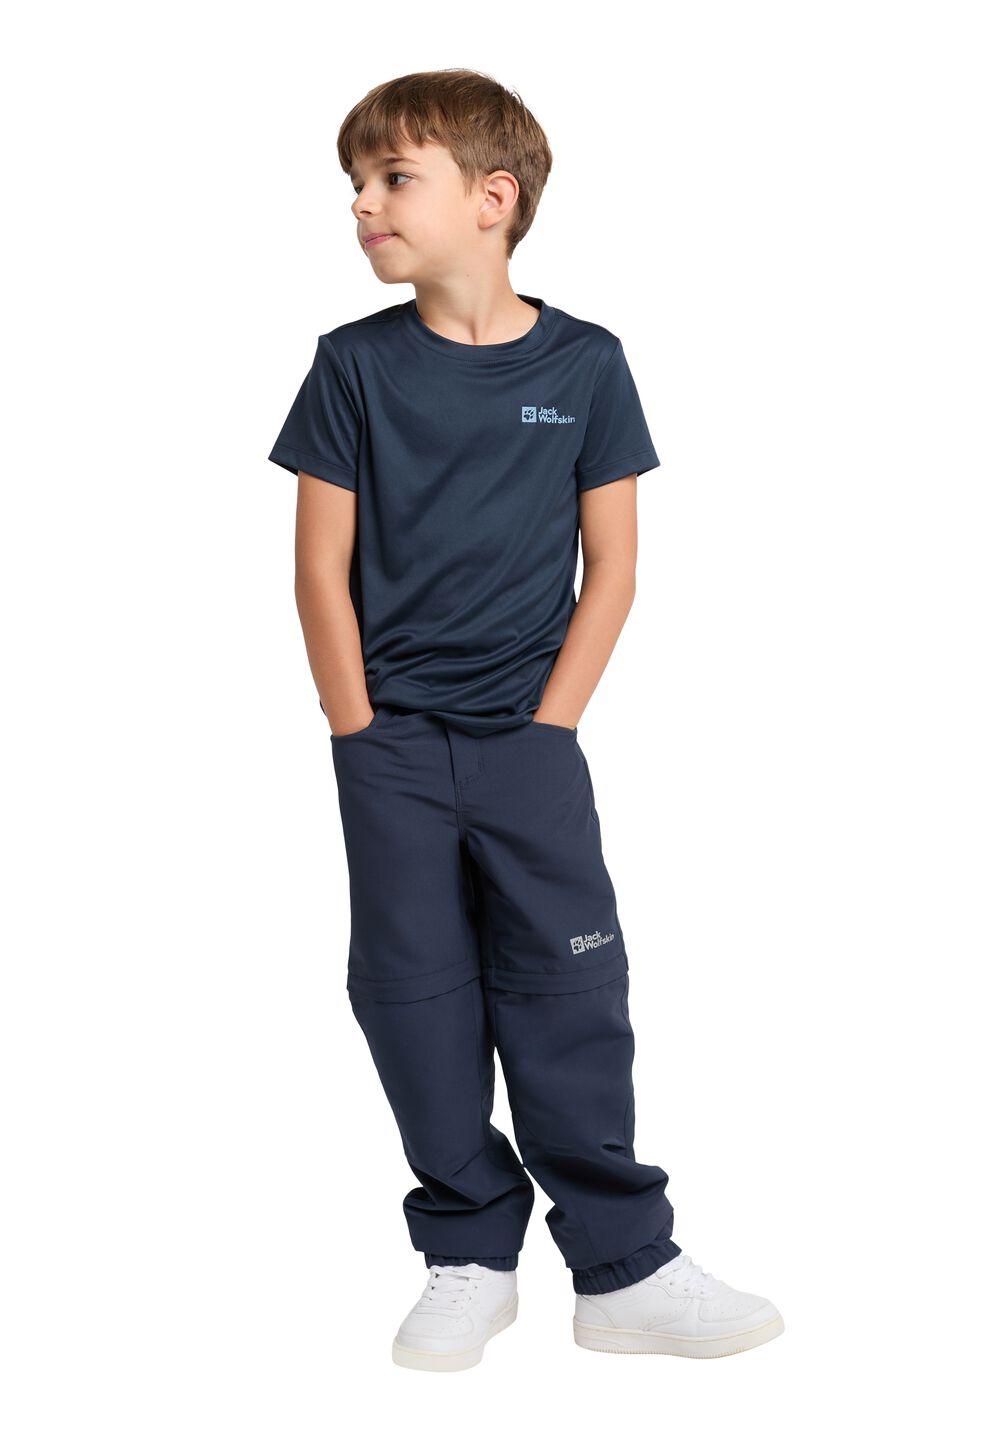 Jack Wolfskin Funktionsshirt Kinder Active Solid T-Shirt Kids 176 blau night blue von Jack Wolfskin